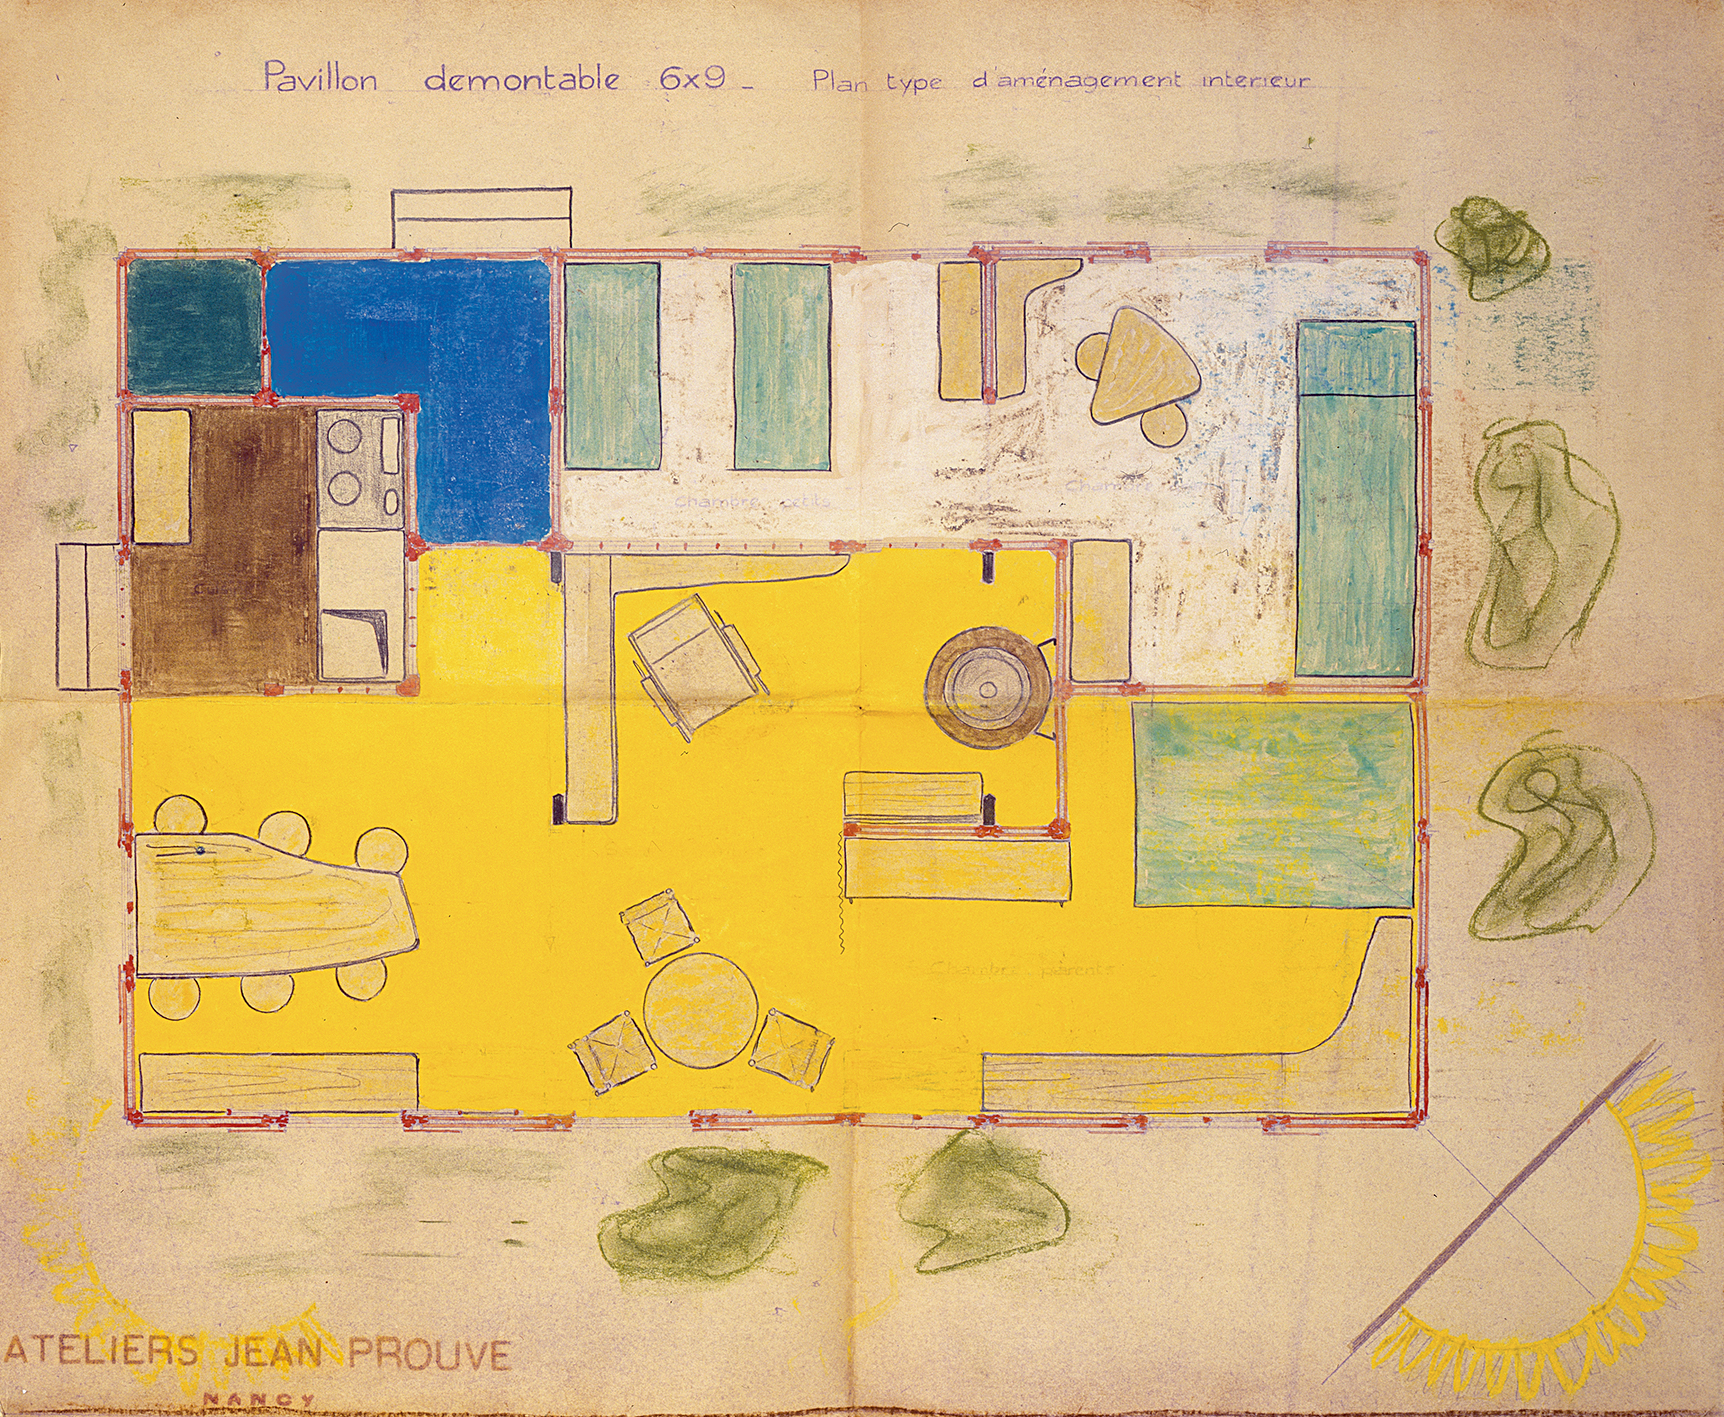 Ateliers Jean Prouvé. « Pavillon démontable 6x9, plan type d’aménagement intérieur », plan n° 9685, tirage rehaussé de couleurs par P. Jeanneret, 1945.